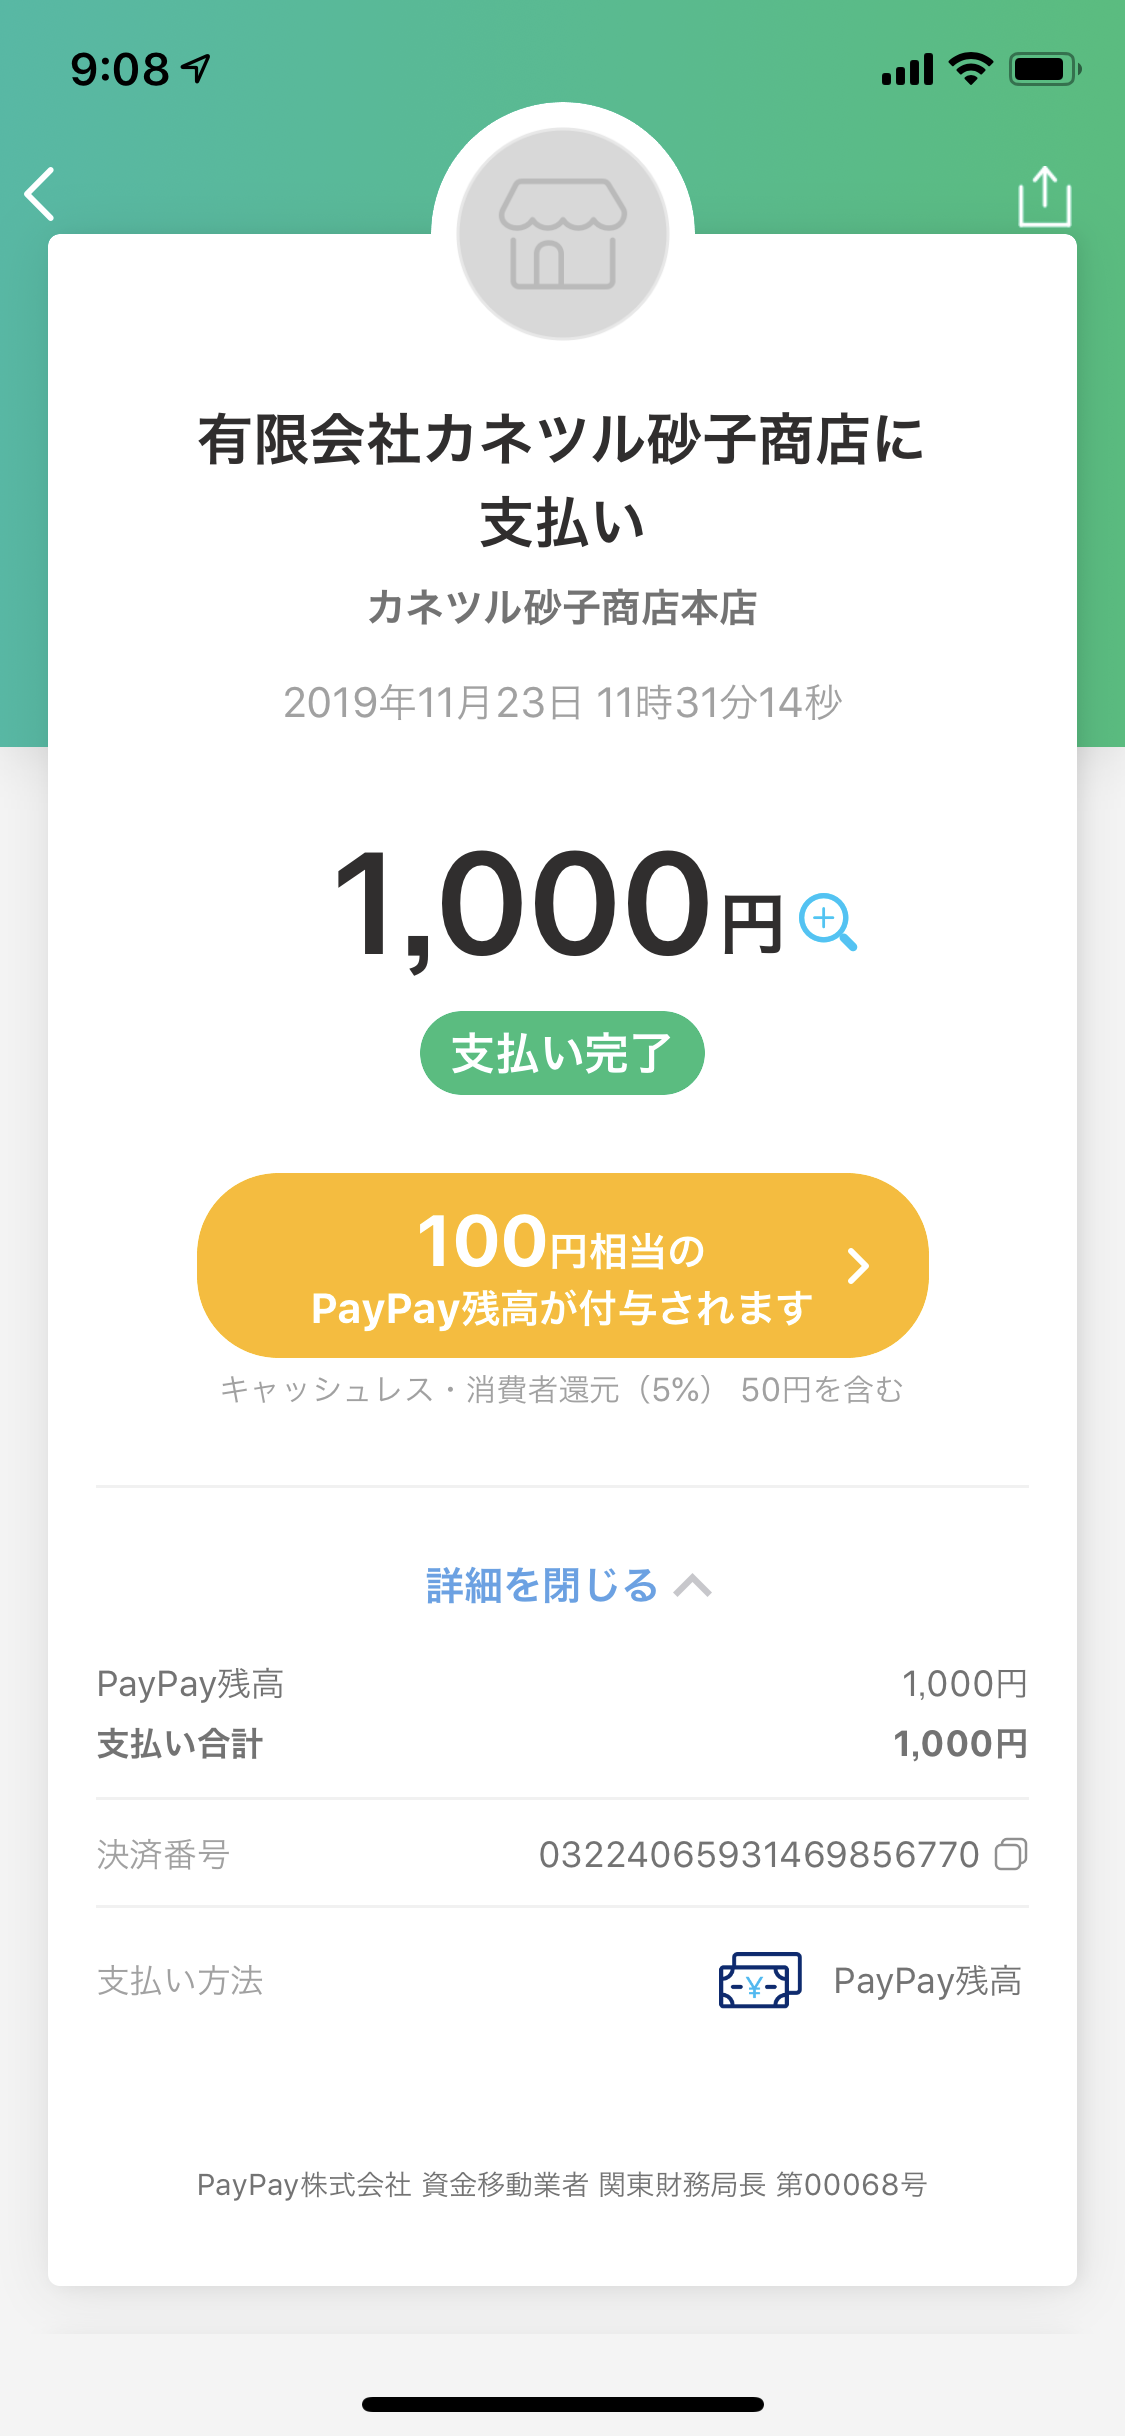 https://n-ko.jp/staffblog/2019/11/24/20191124_000850000_iOS.png